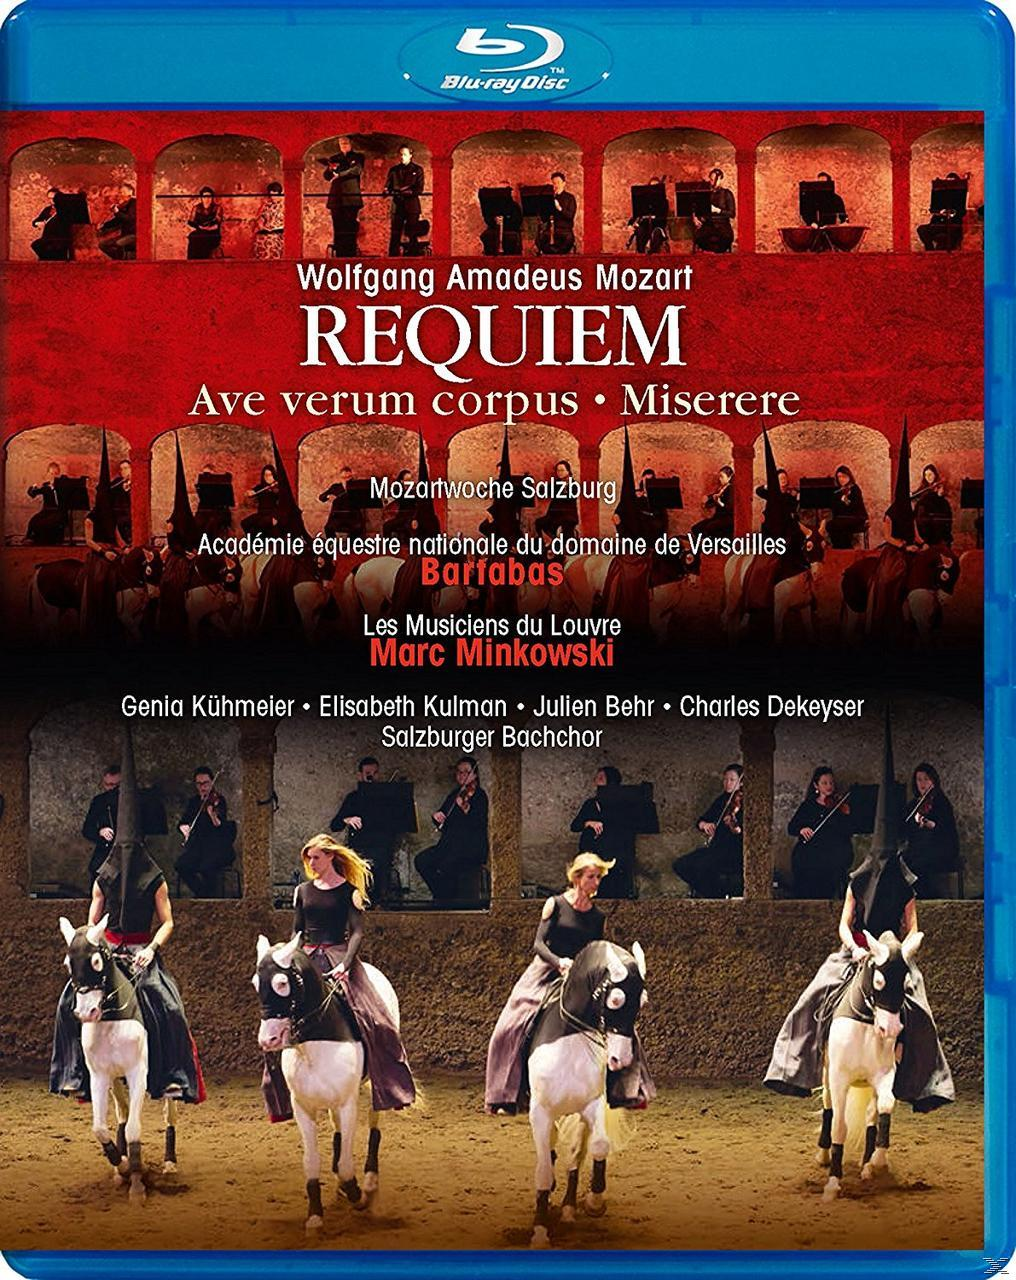 VARIOUS, Salzburger Bachchor, Académie Musiciens Versailles, de (Blu-ray) - Équestre Requiem Louvre Du Les 